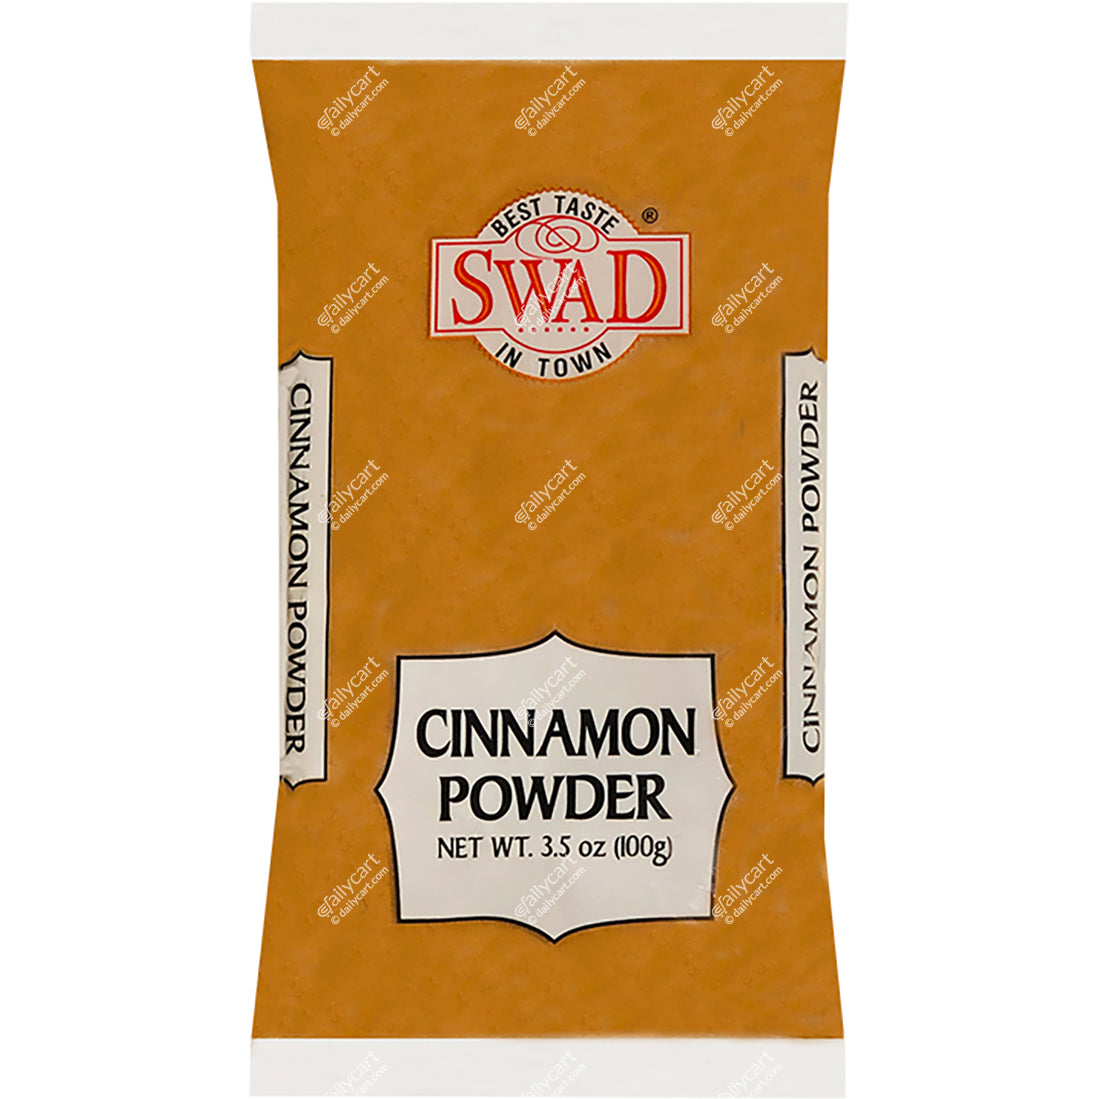 Swad Cinnamon Powder, 100 g